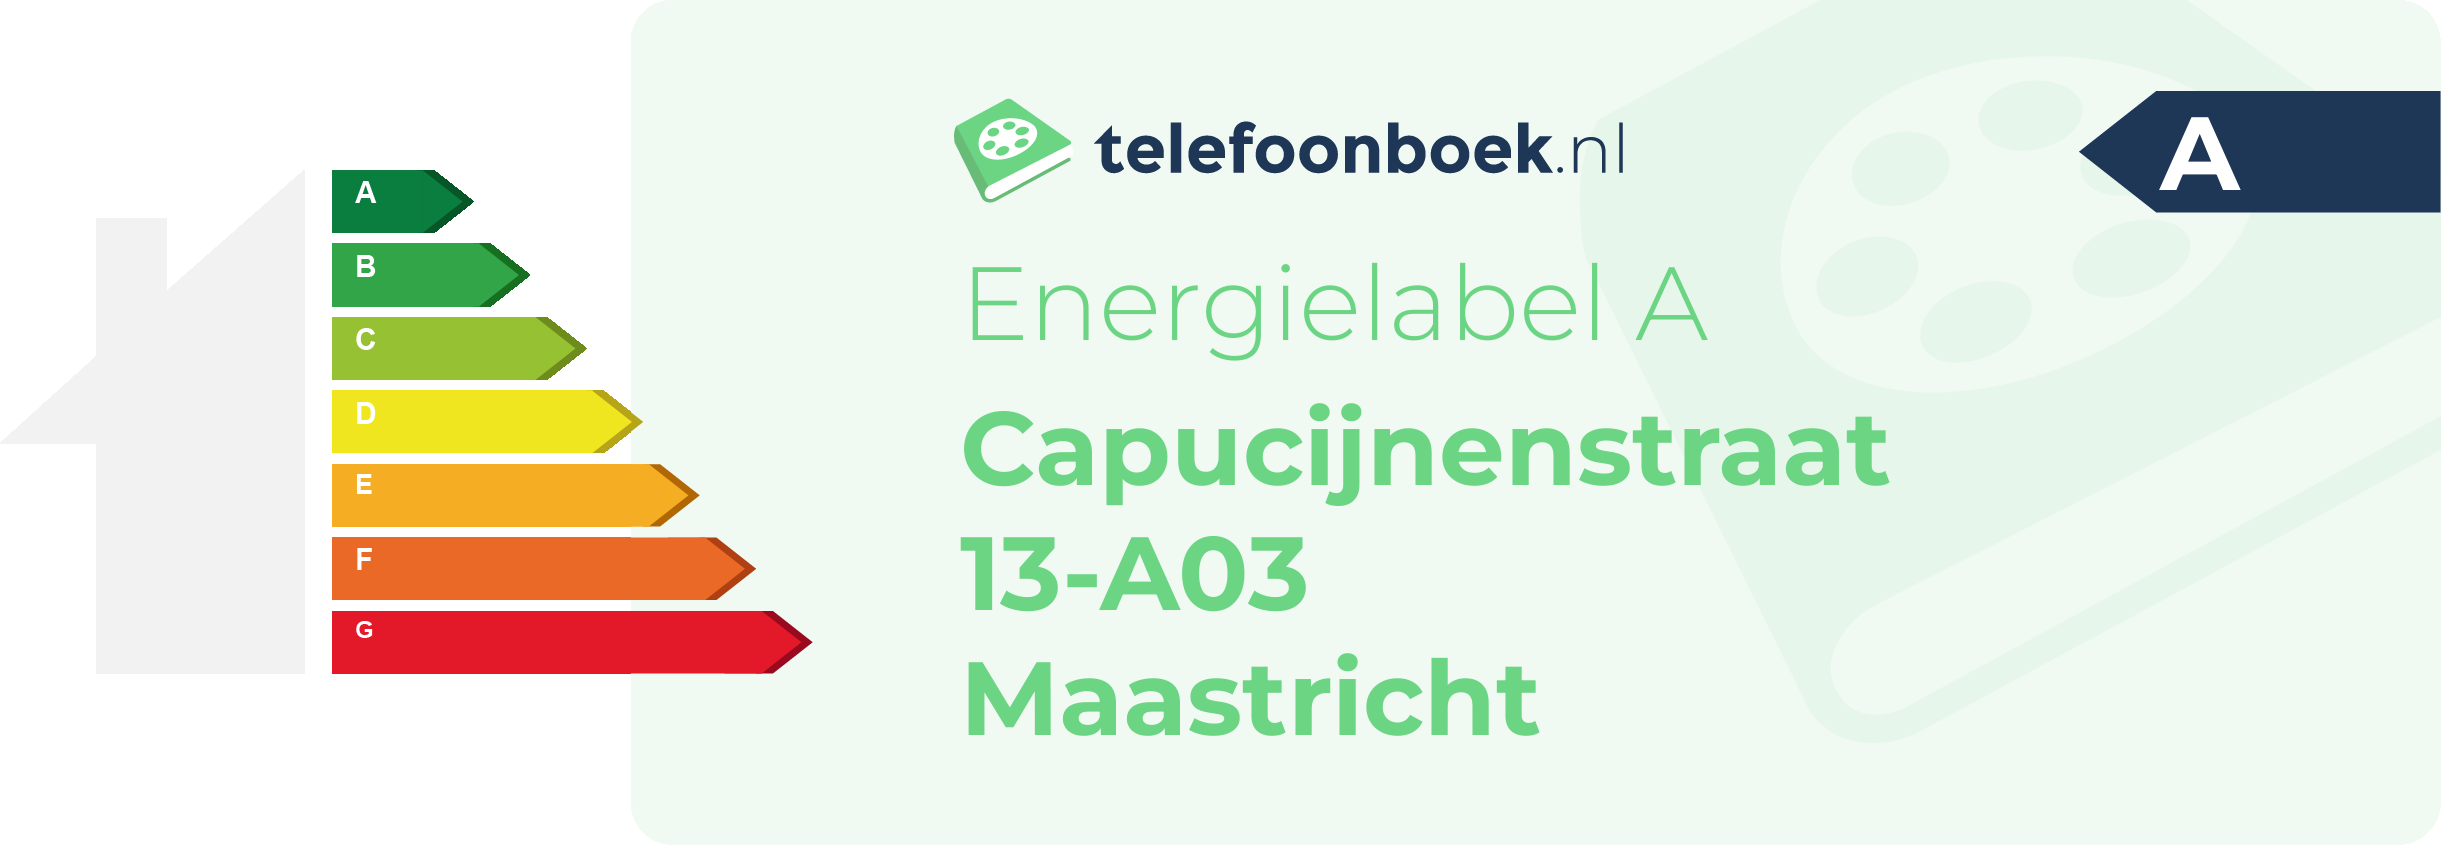 Energielabel Capucijnenstraat 13-A03 Maastricht